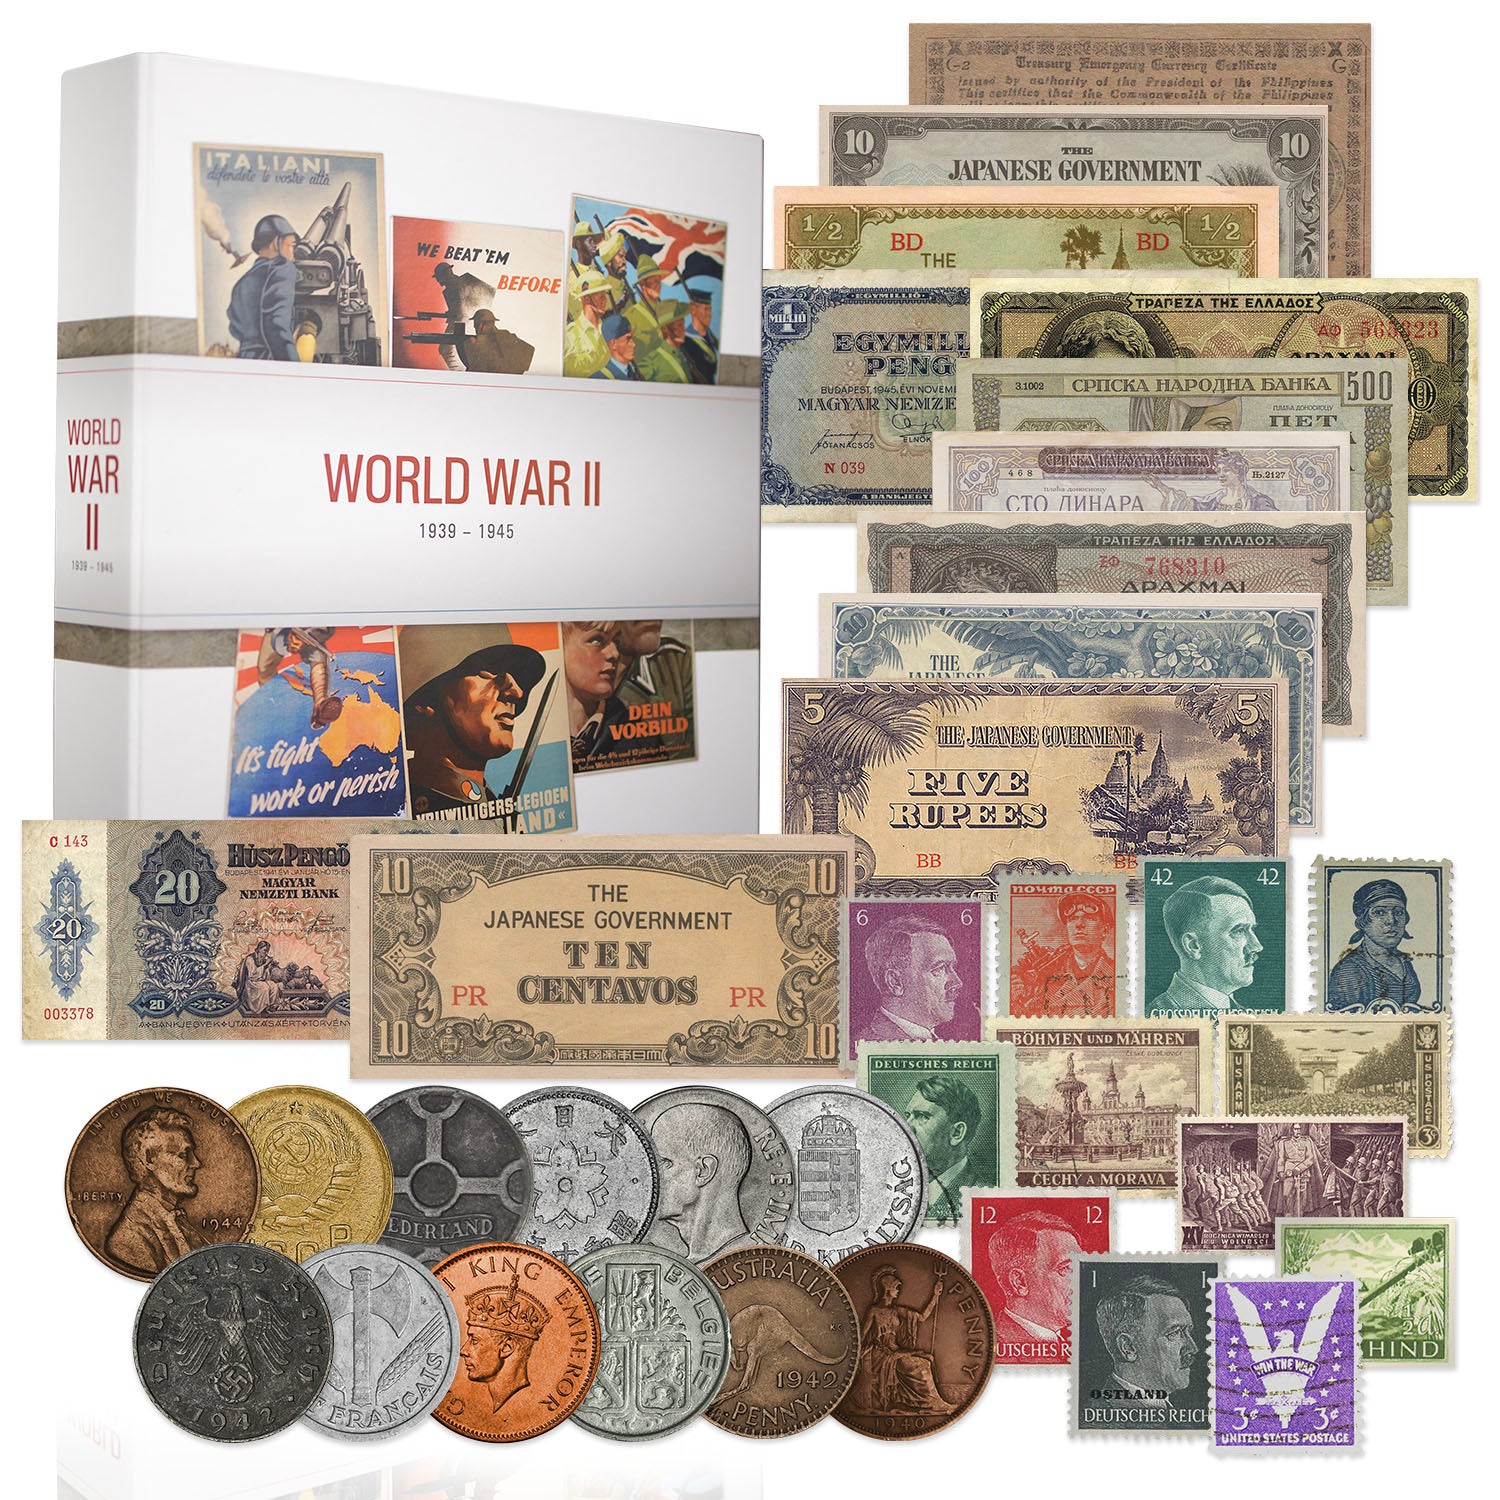 L'édition collector des artefacts historiques de la Seconde Guerre mondiale 